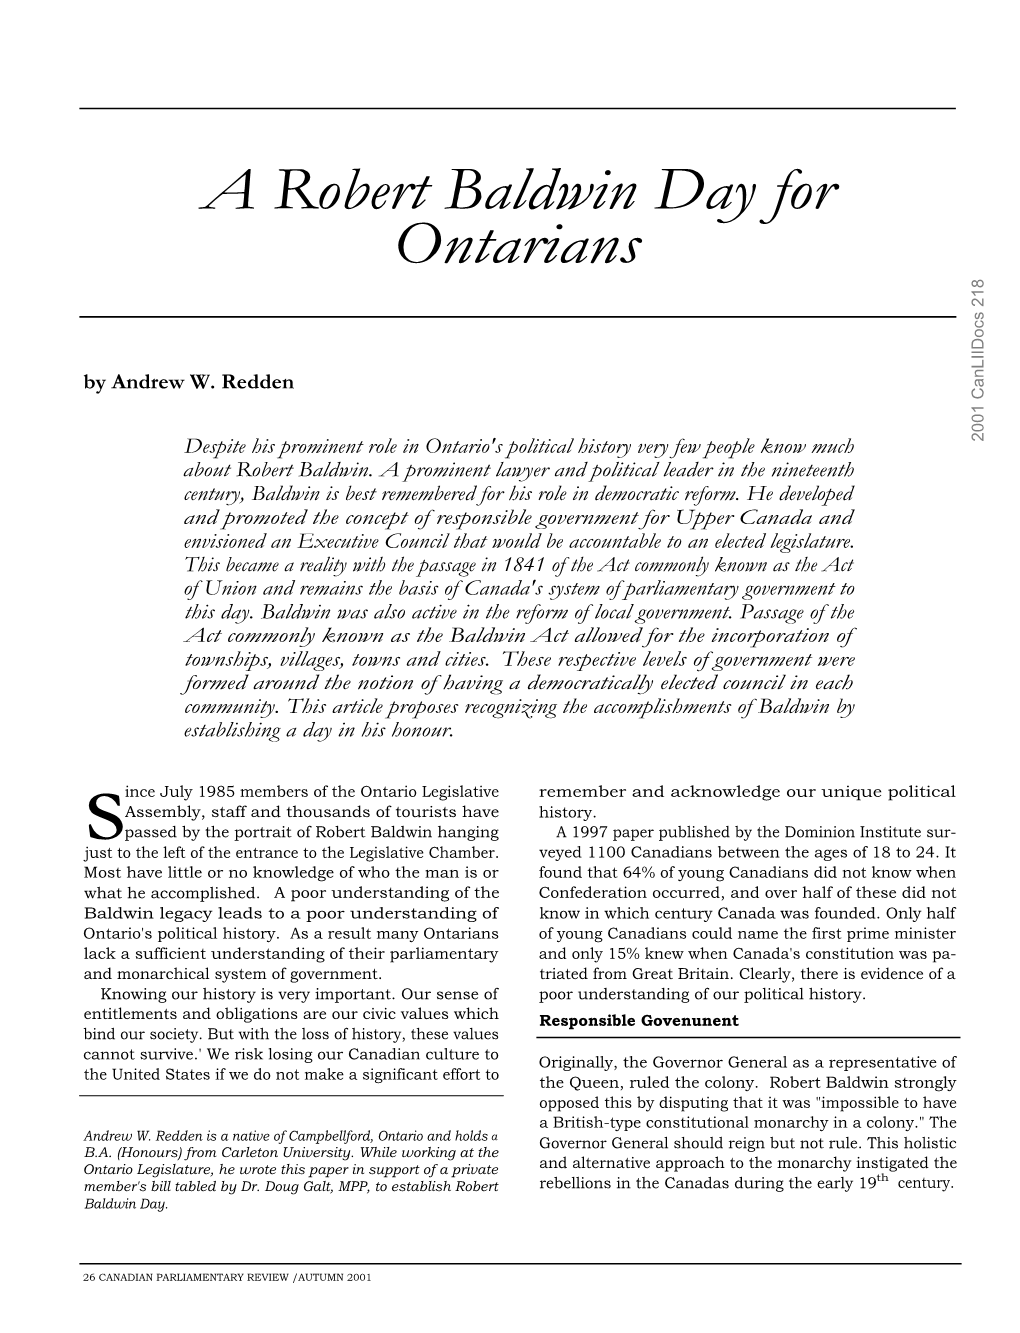 A Robert Baldwin Day for Ontarians